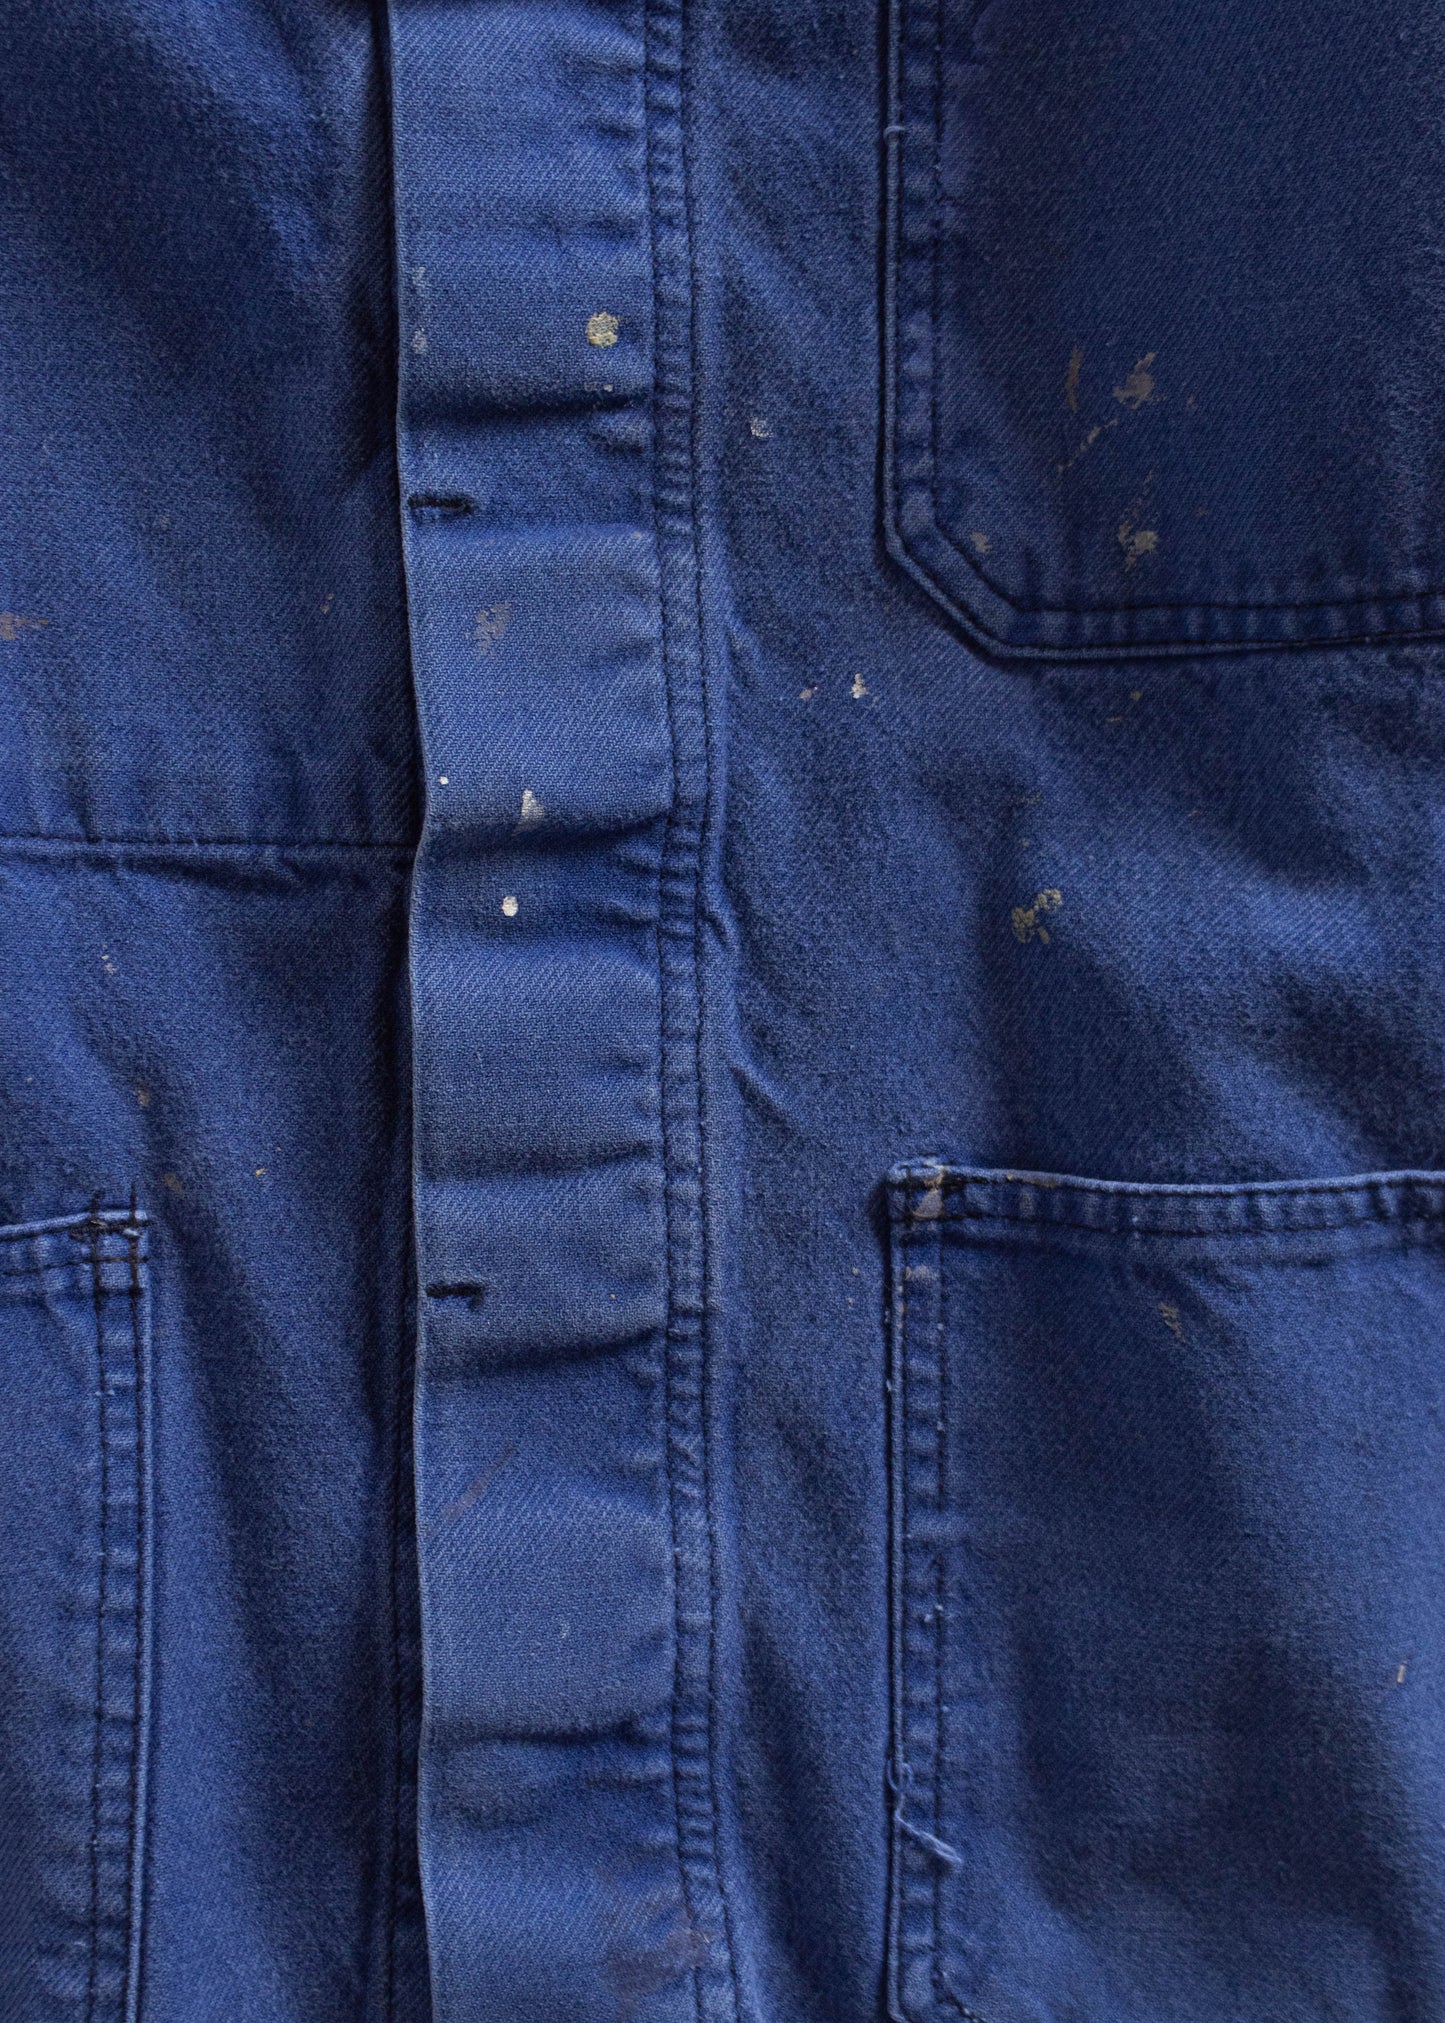 Vintage 1980s Bleu de Travail Workwear Chore Jacket Size S/M